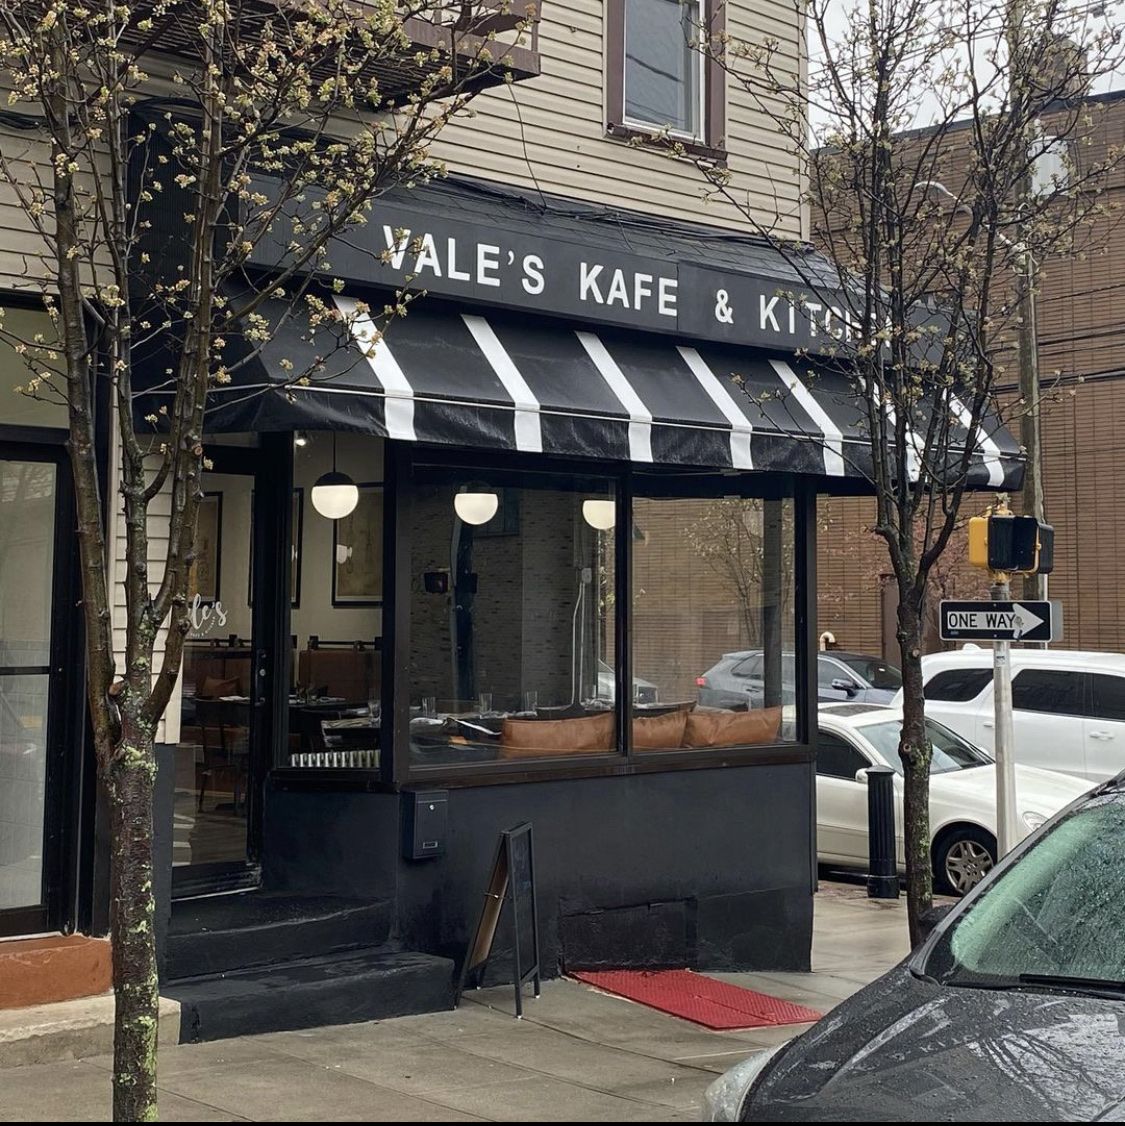 Vale's Kafe & Kitchen